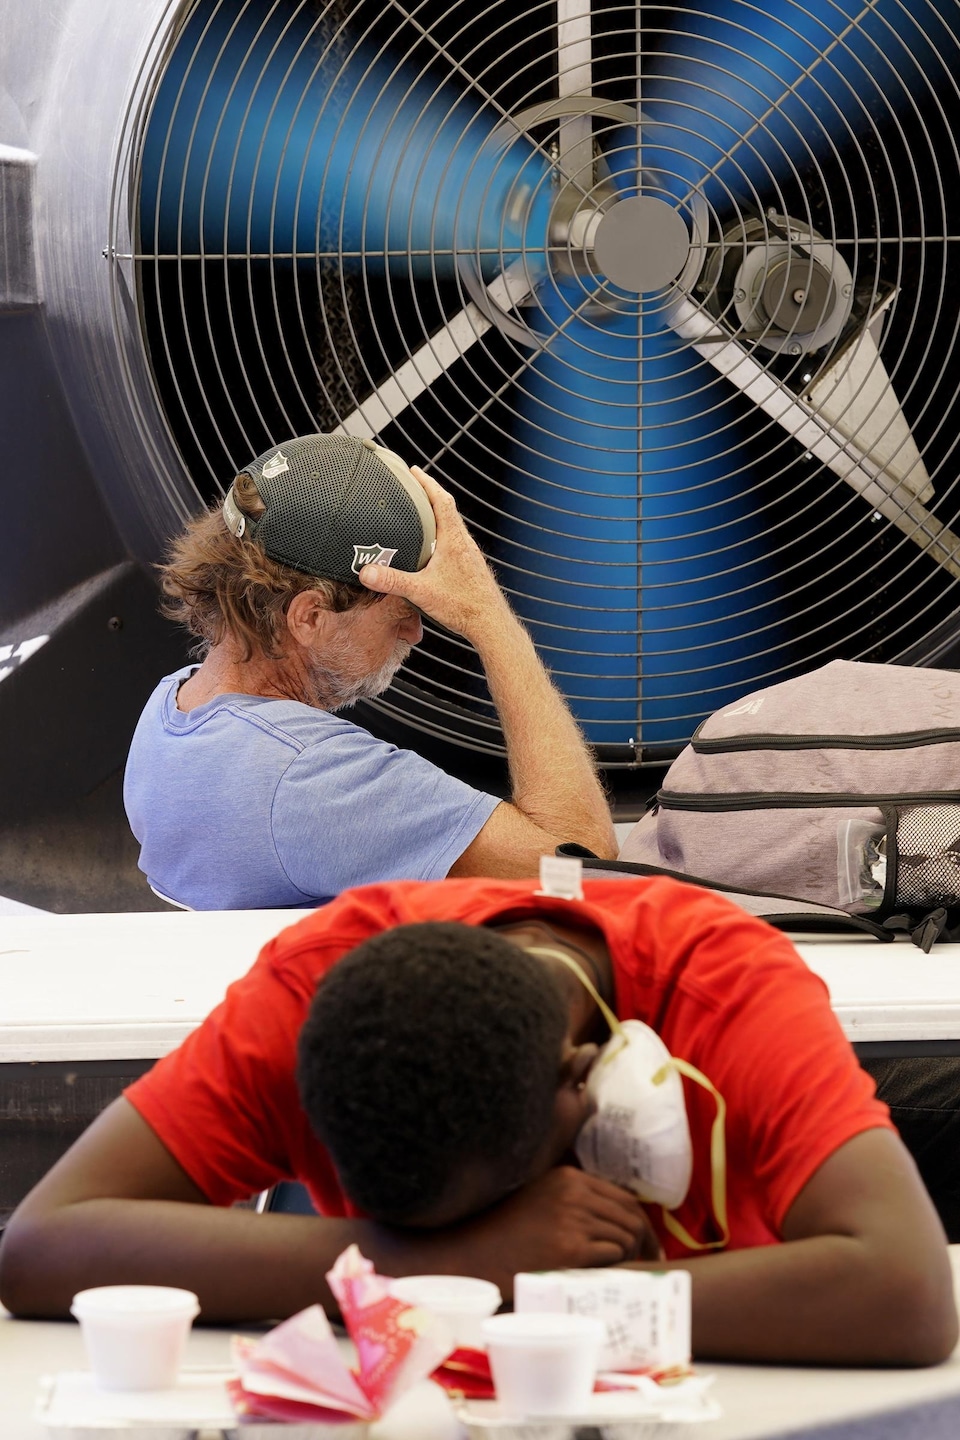 Deux personnes assises devant un immense ventilateur.